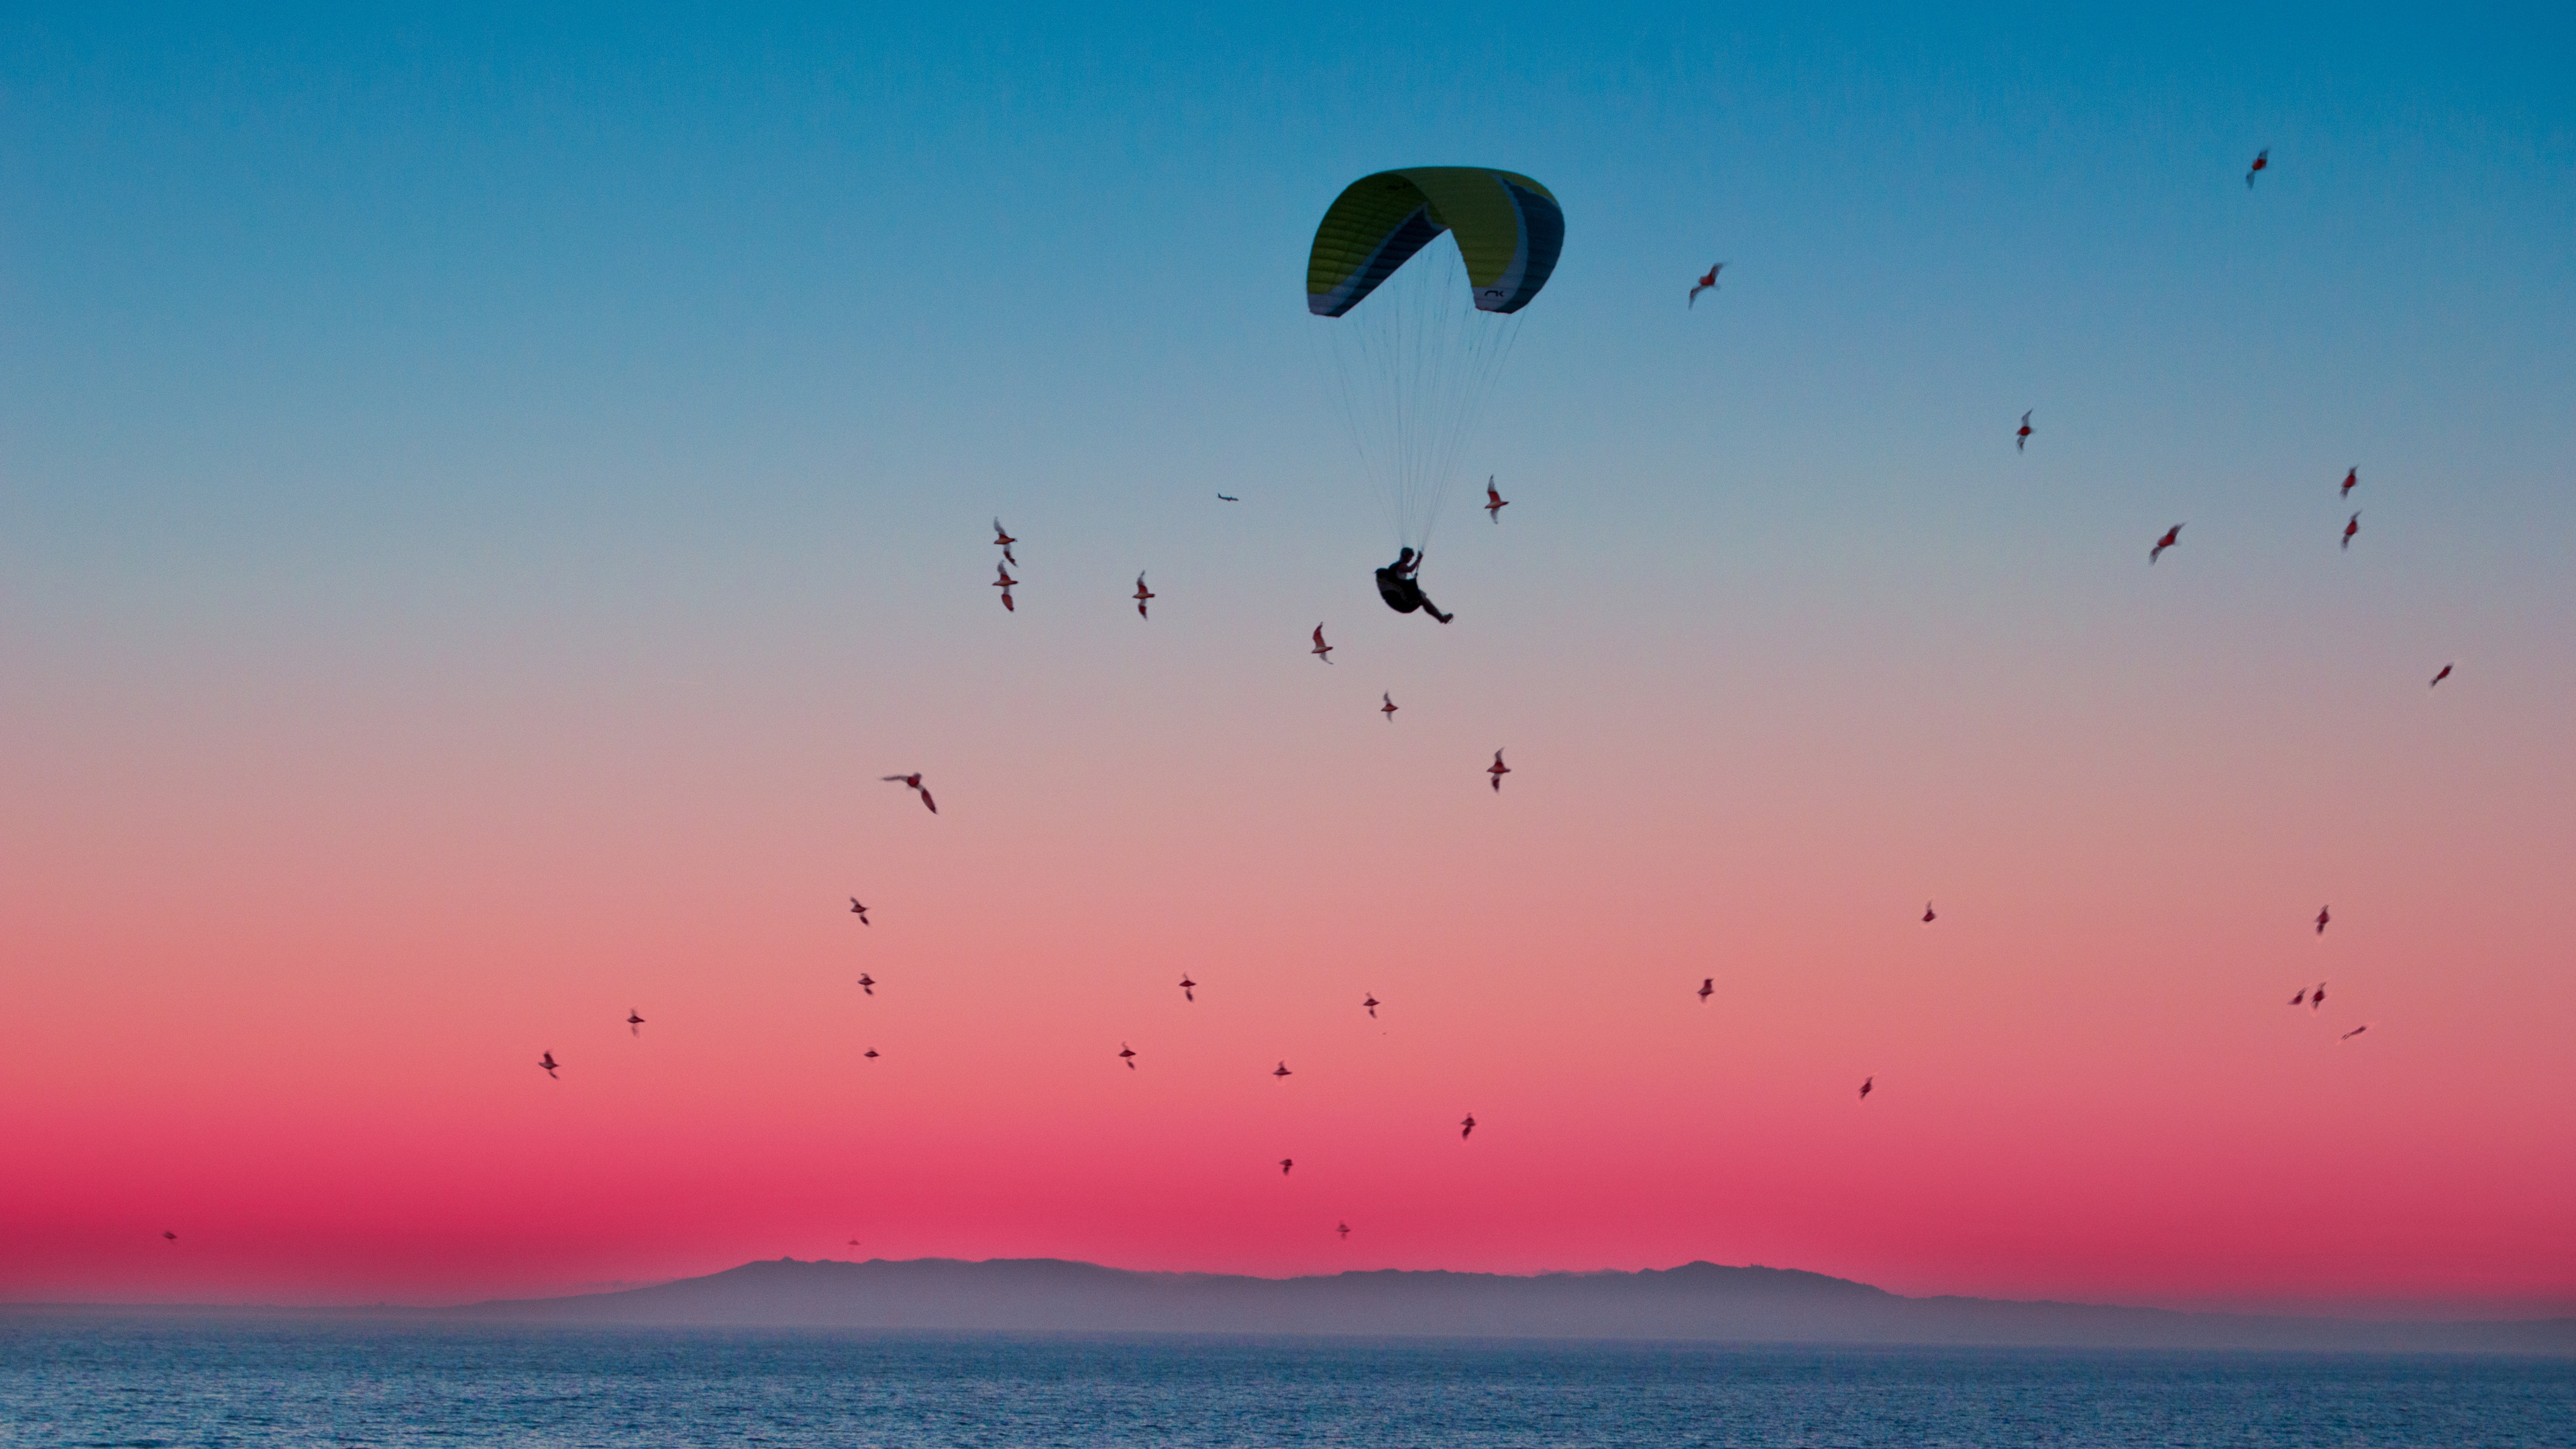 地平线, 空中运动, 降落伞, 大海, 粉红色 壁纸 3840x2160 允许